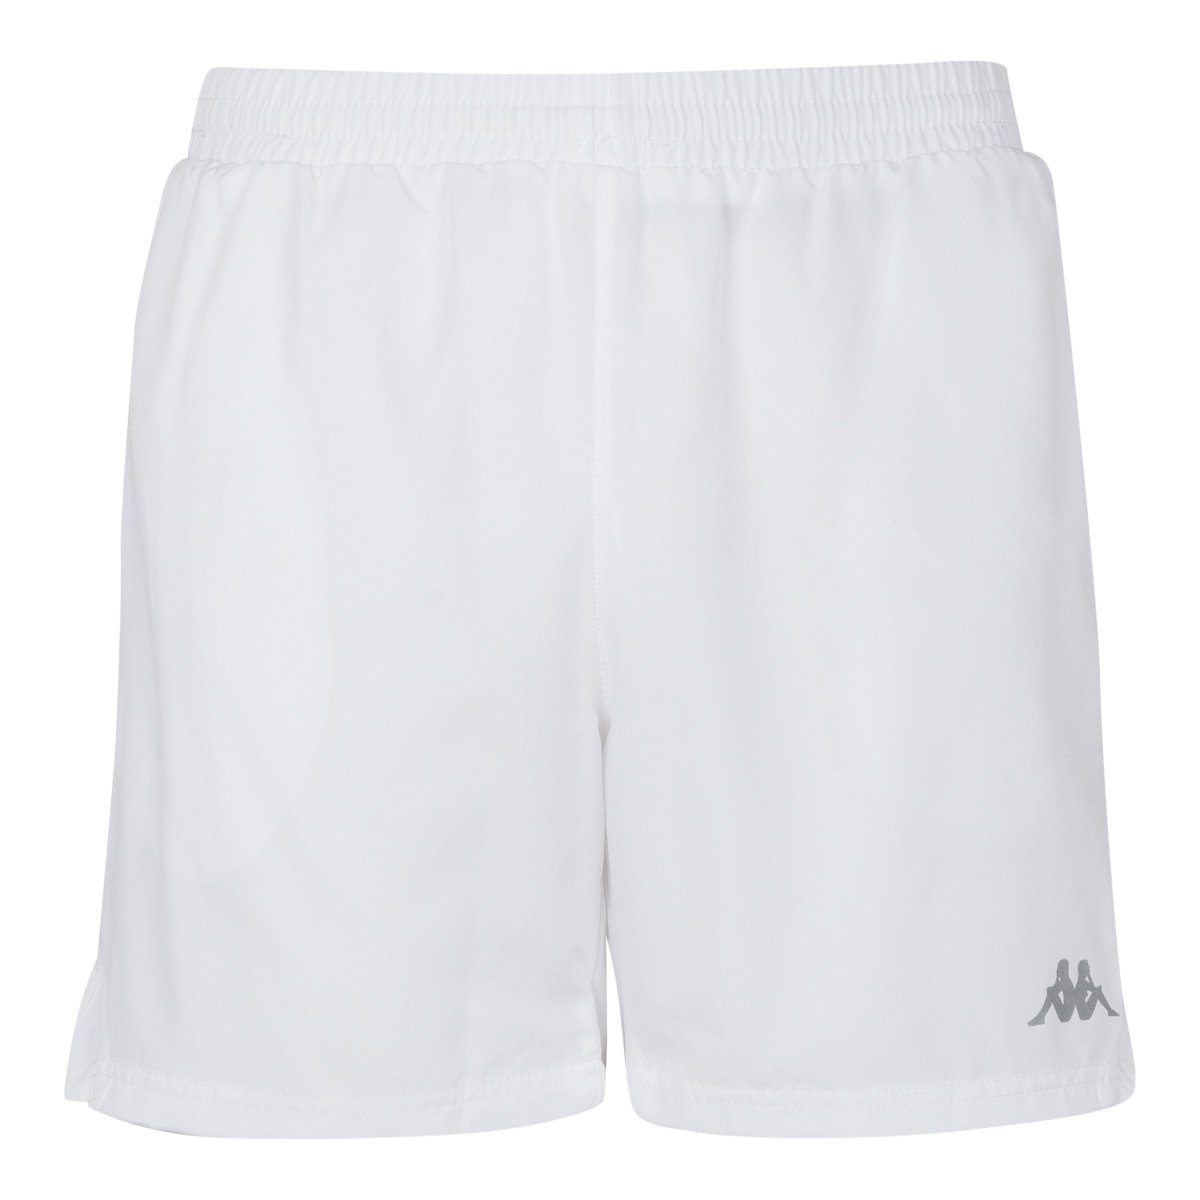 Pantalones cortes Tenis Lambre Blanco Hombre - Imagen 1